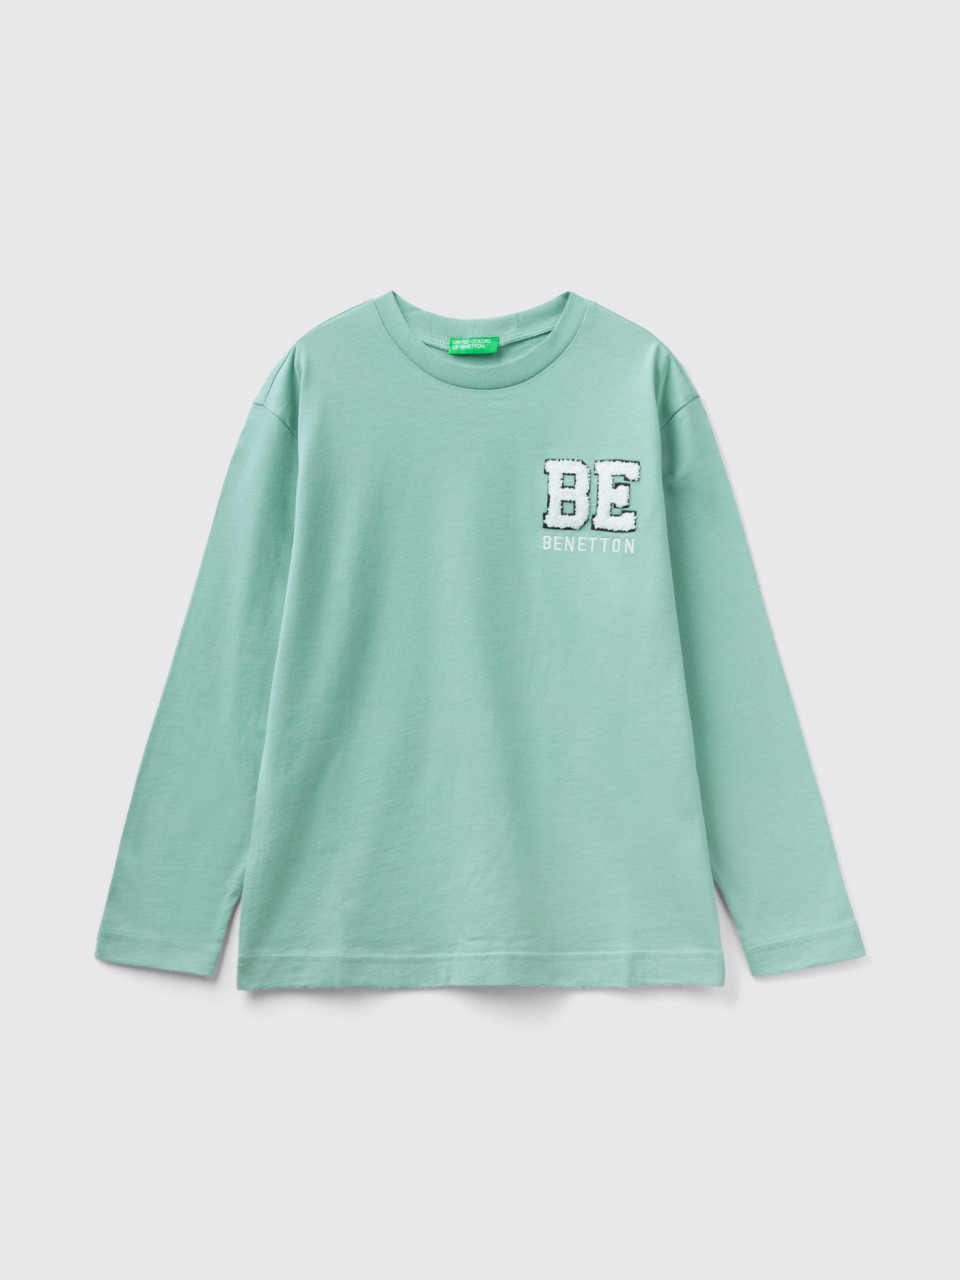 Benetton, Warmes T-shirt Aus 100% Biobaumwolle, Türkisblau, male